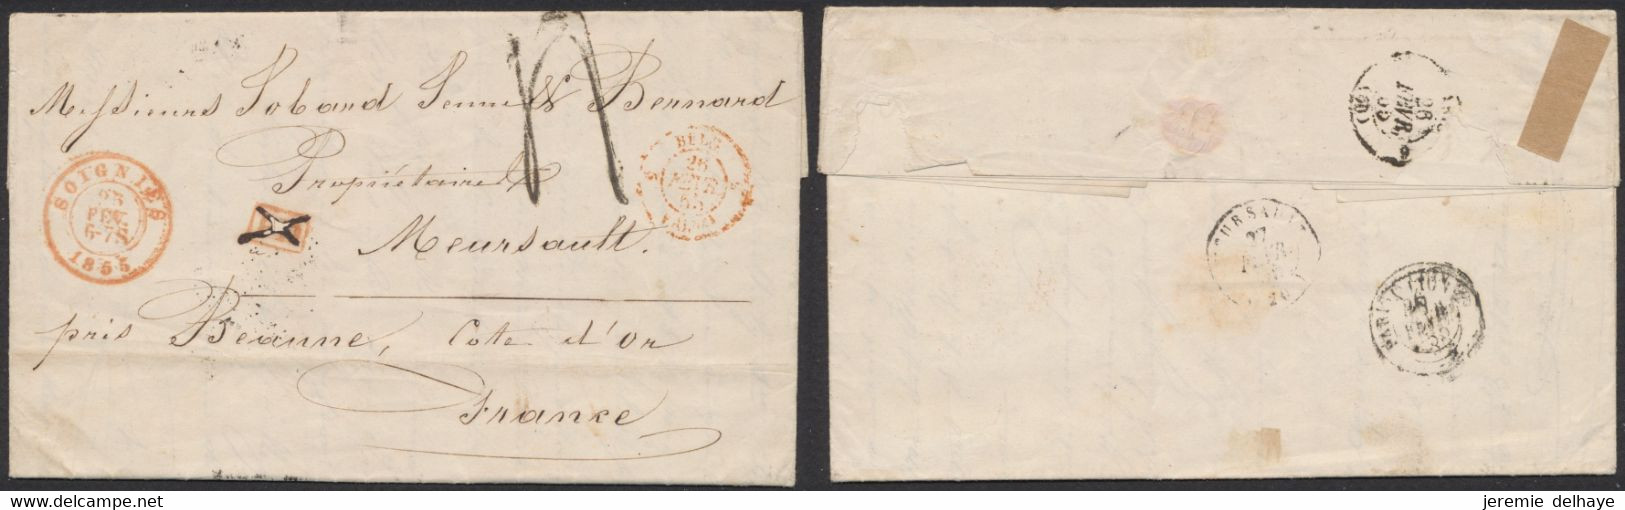 LAC Non Affranchie + Cachet Dateur "Soignies" (1855) Griffe PD Annulé à La Plume, Port 4 Décimes > Meursault (France) - Rural Post